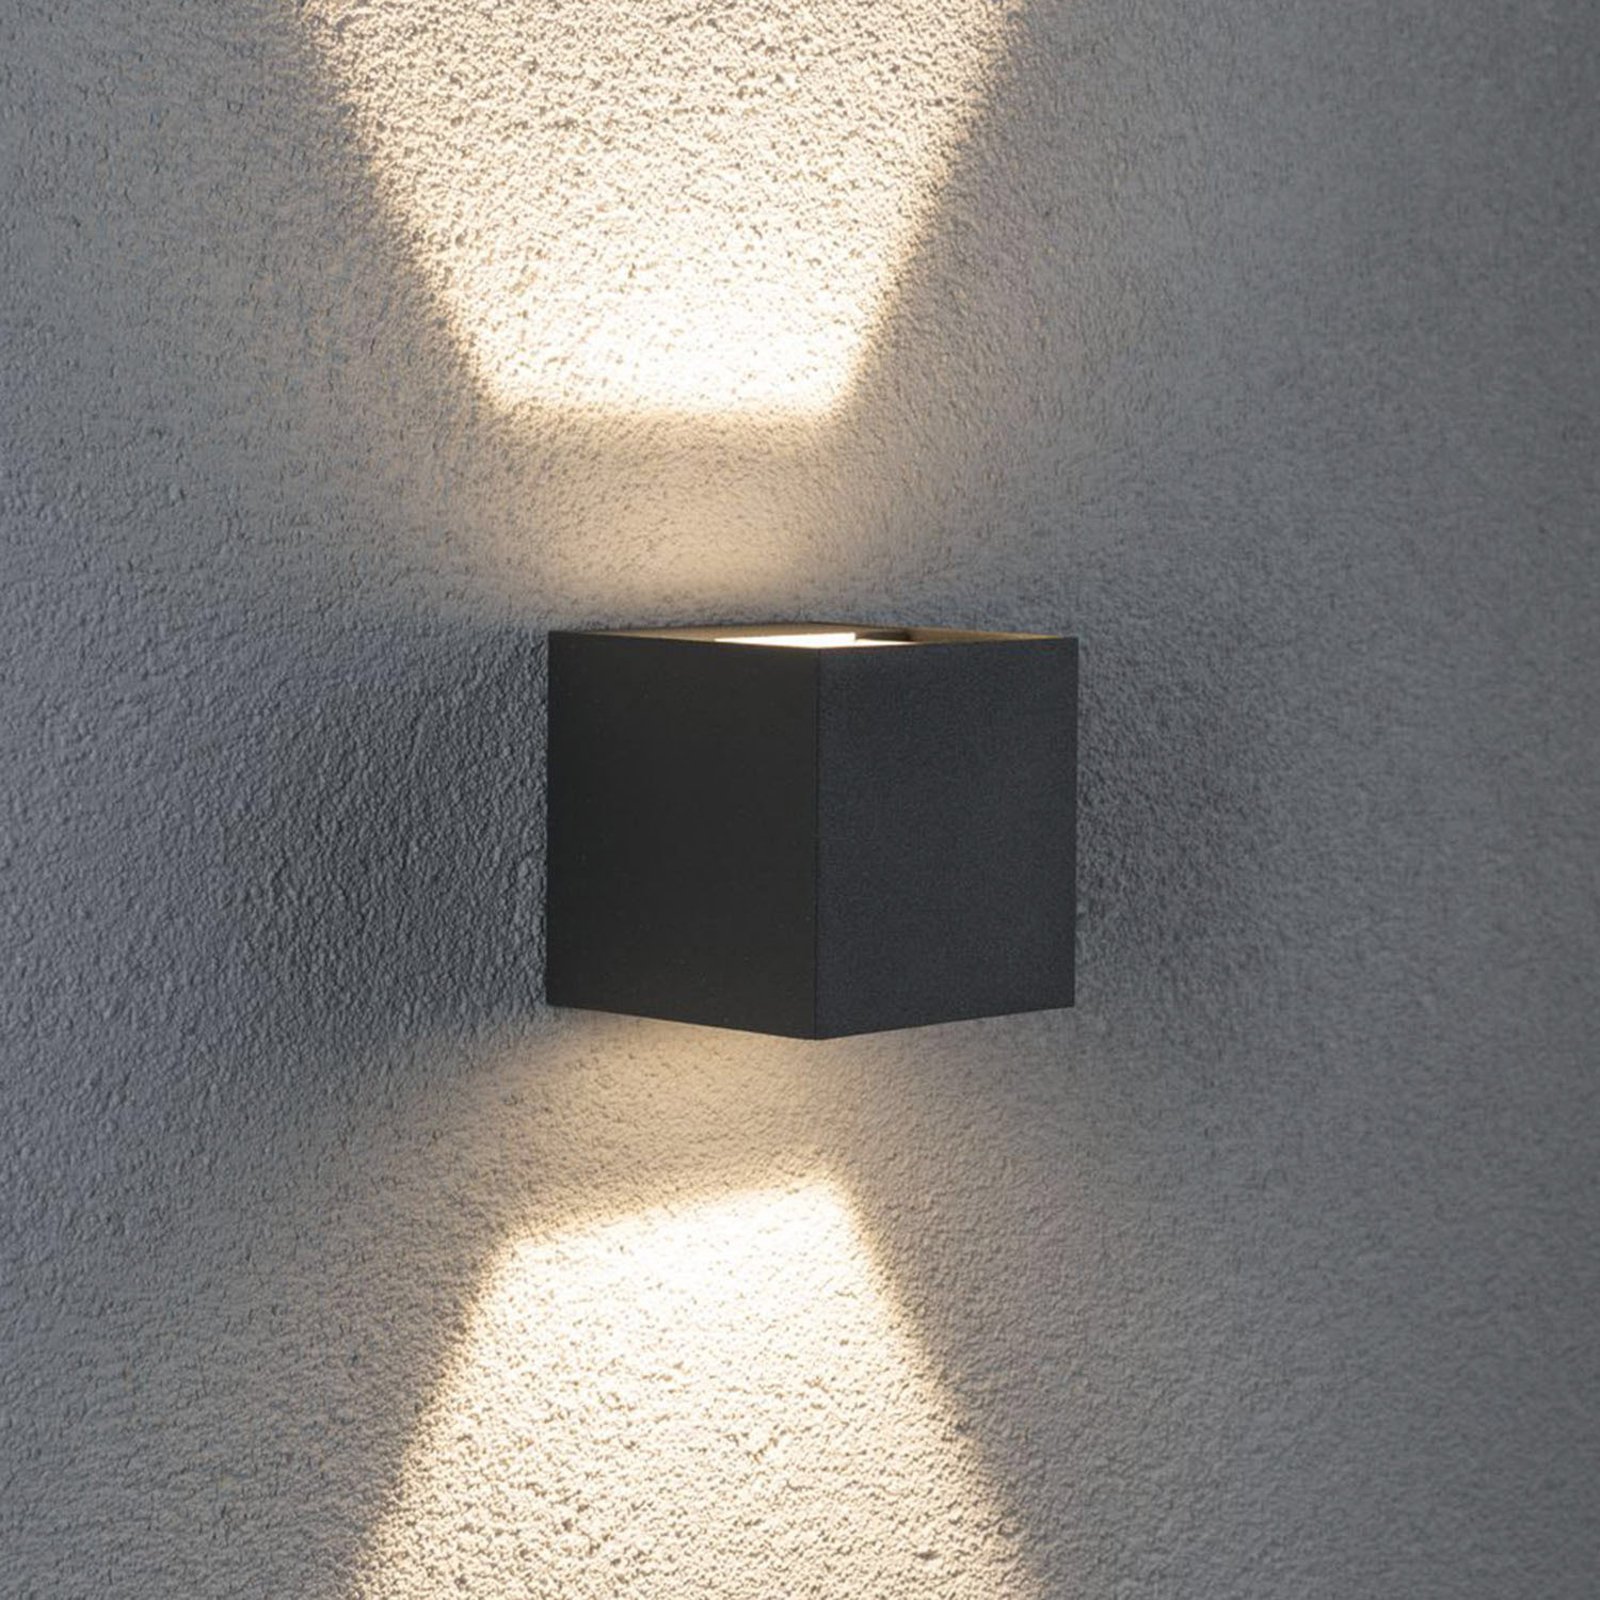 Paulmann Cybo aplique LED de exterior, 8x8cm, gris